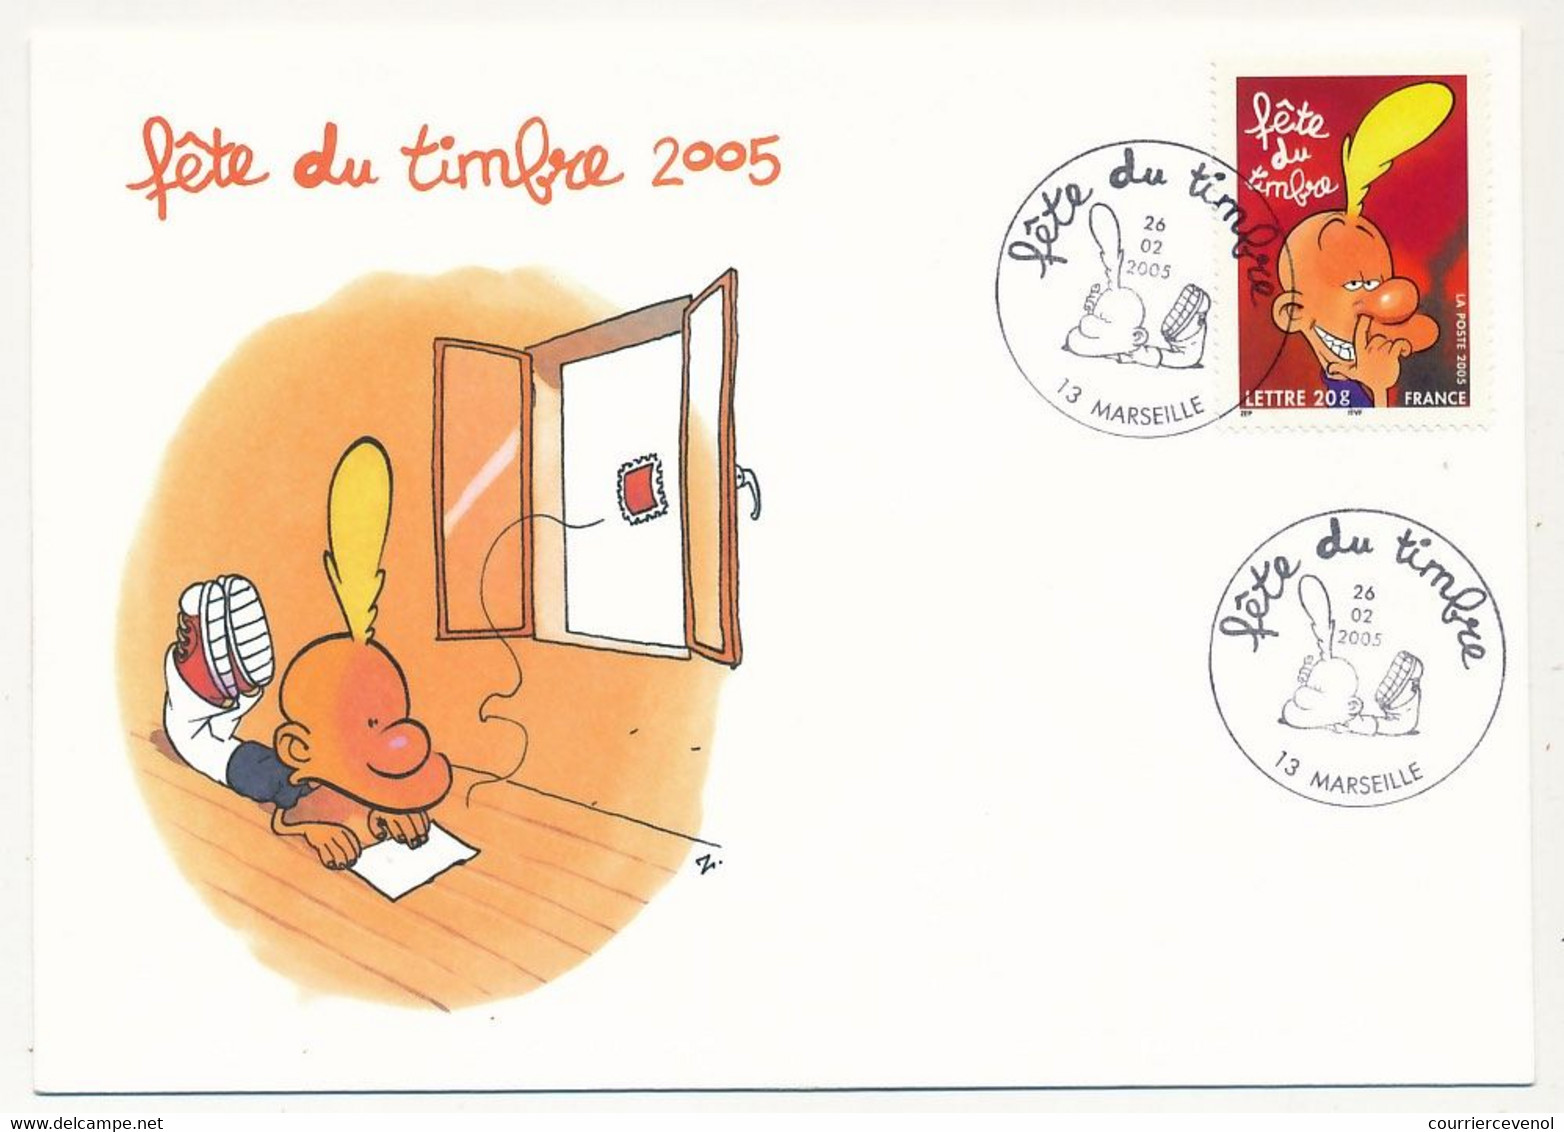 France - 2 Enveloppes Fédérales - Fête Du Timbre 2005 - TITEUF - Oblit. 13 MARSEILLE - 26.02.2005 - Covers & Documents